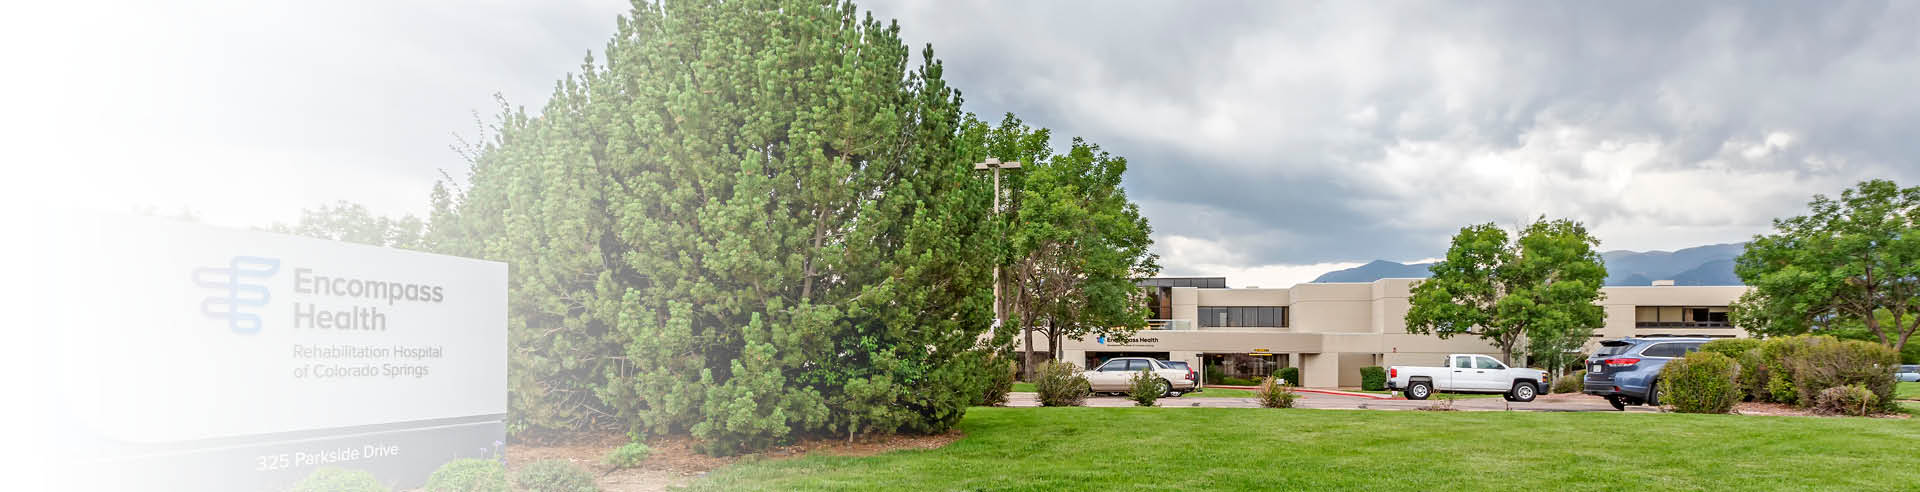 Encompass Health Rehabilitation Hospital of Colorado Springs exterior image